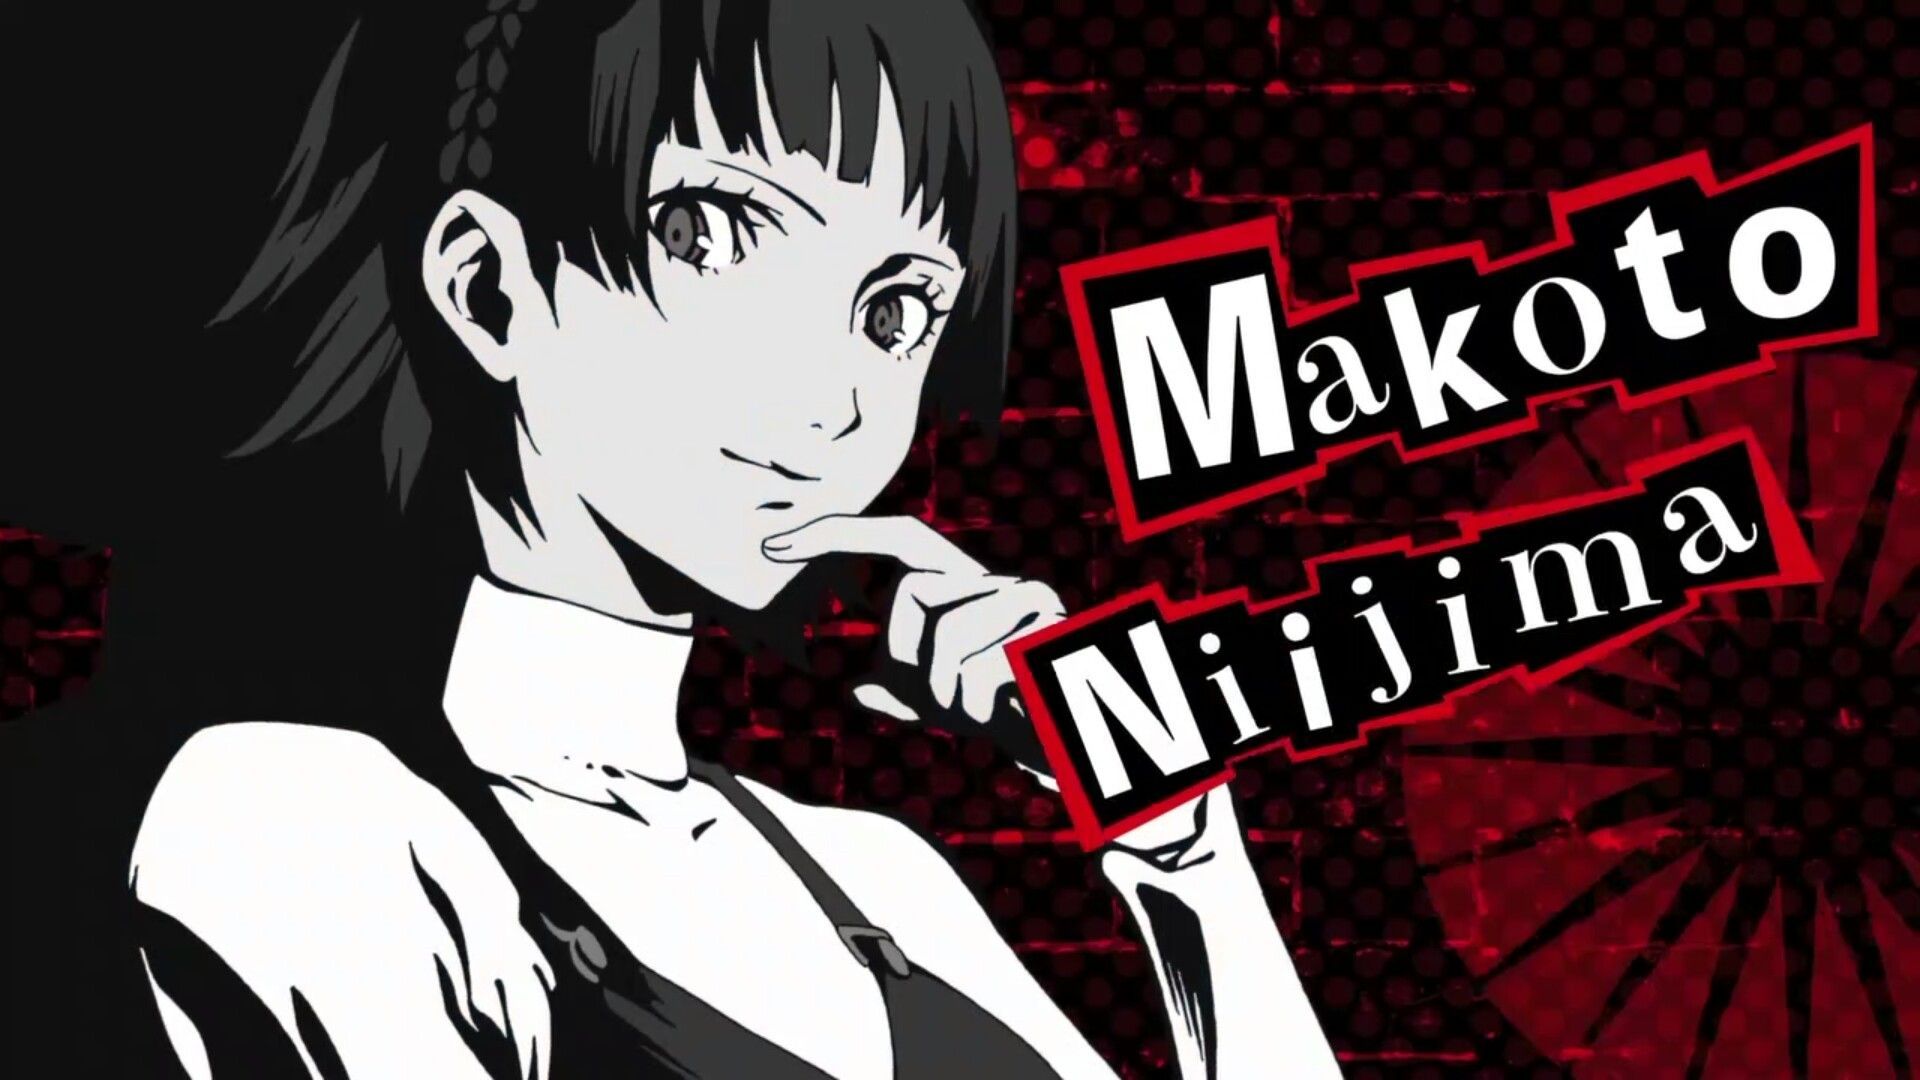 Persona 5: Makoto Niijima. Persona Persona, Persona 5 makoto